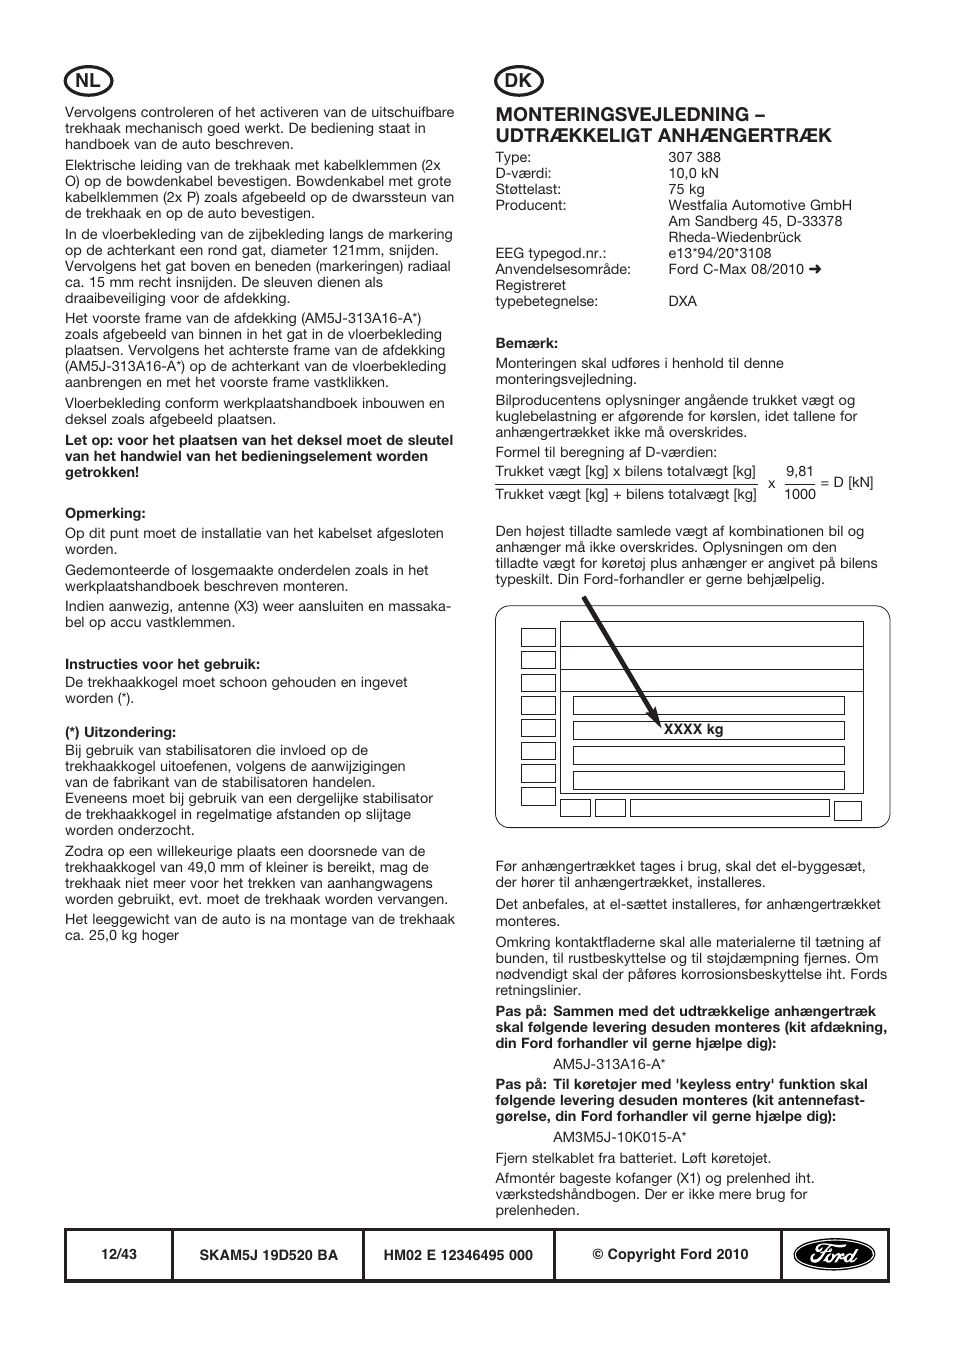 Monteringsvejledning – udtrækkeligt anhængertræk, Nl dk | FORD WESTFALIA  388 User Manual | Page 12 / 43